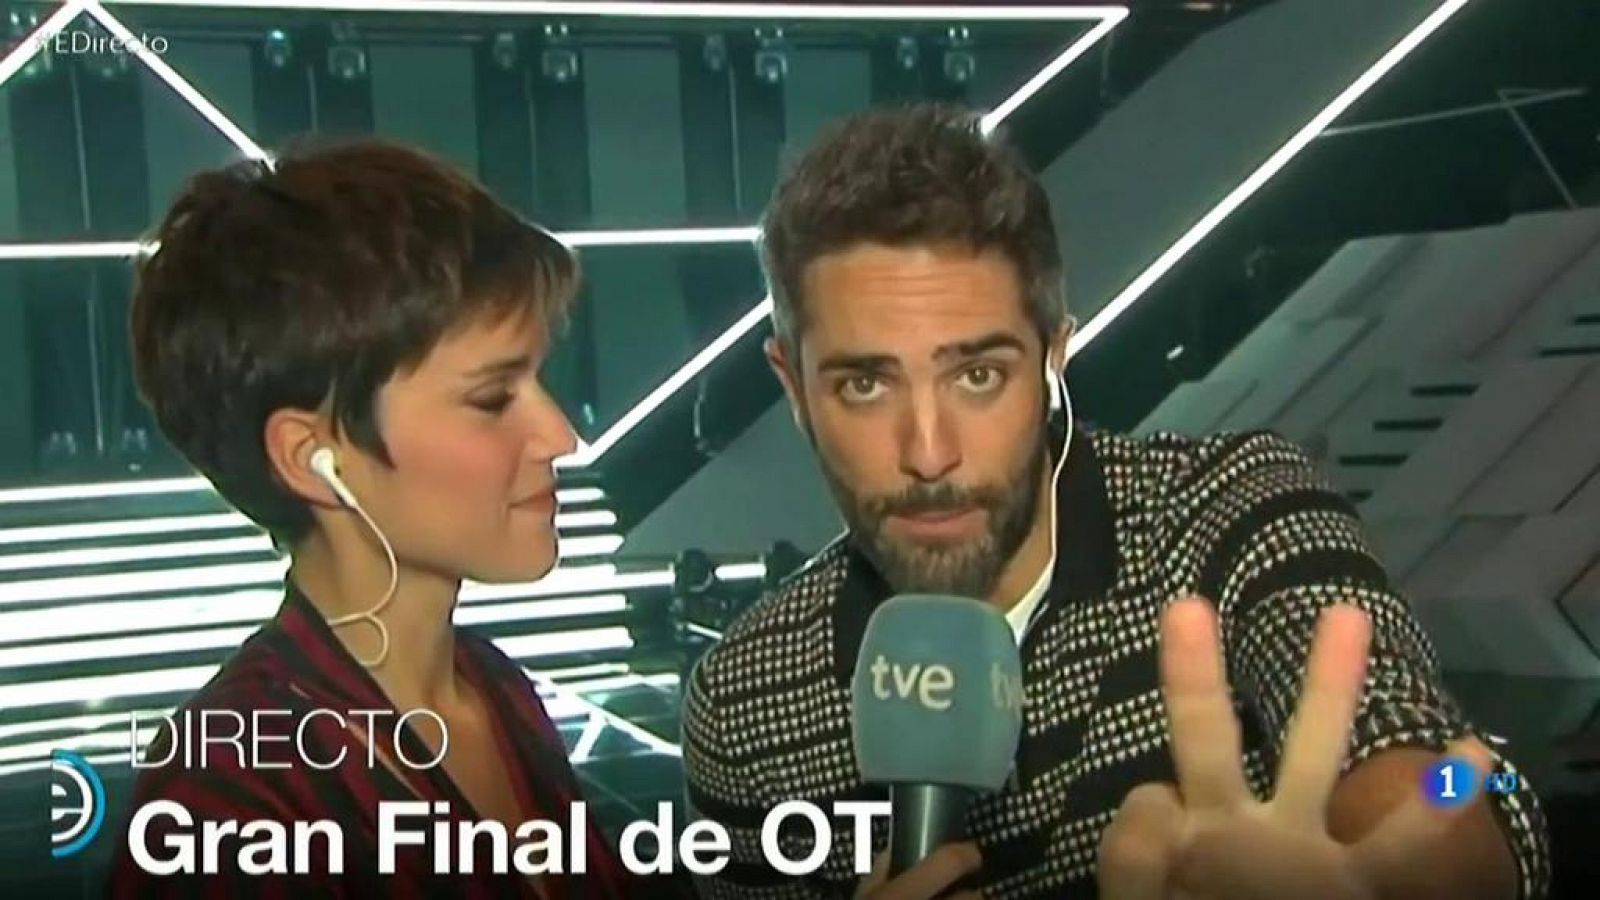 España Directo - Roberto Leal cuenta la mecánica de la gala final de OT 2018